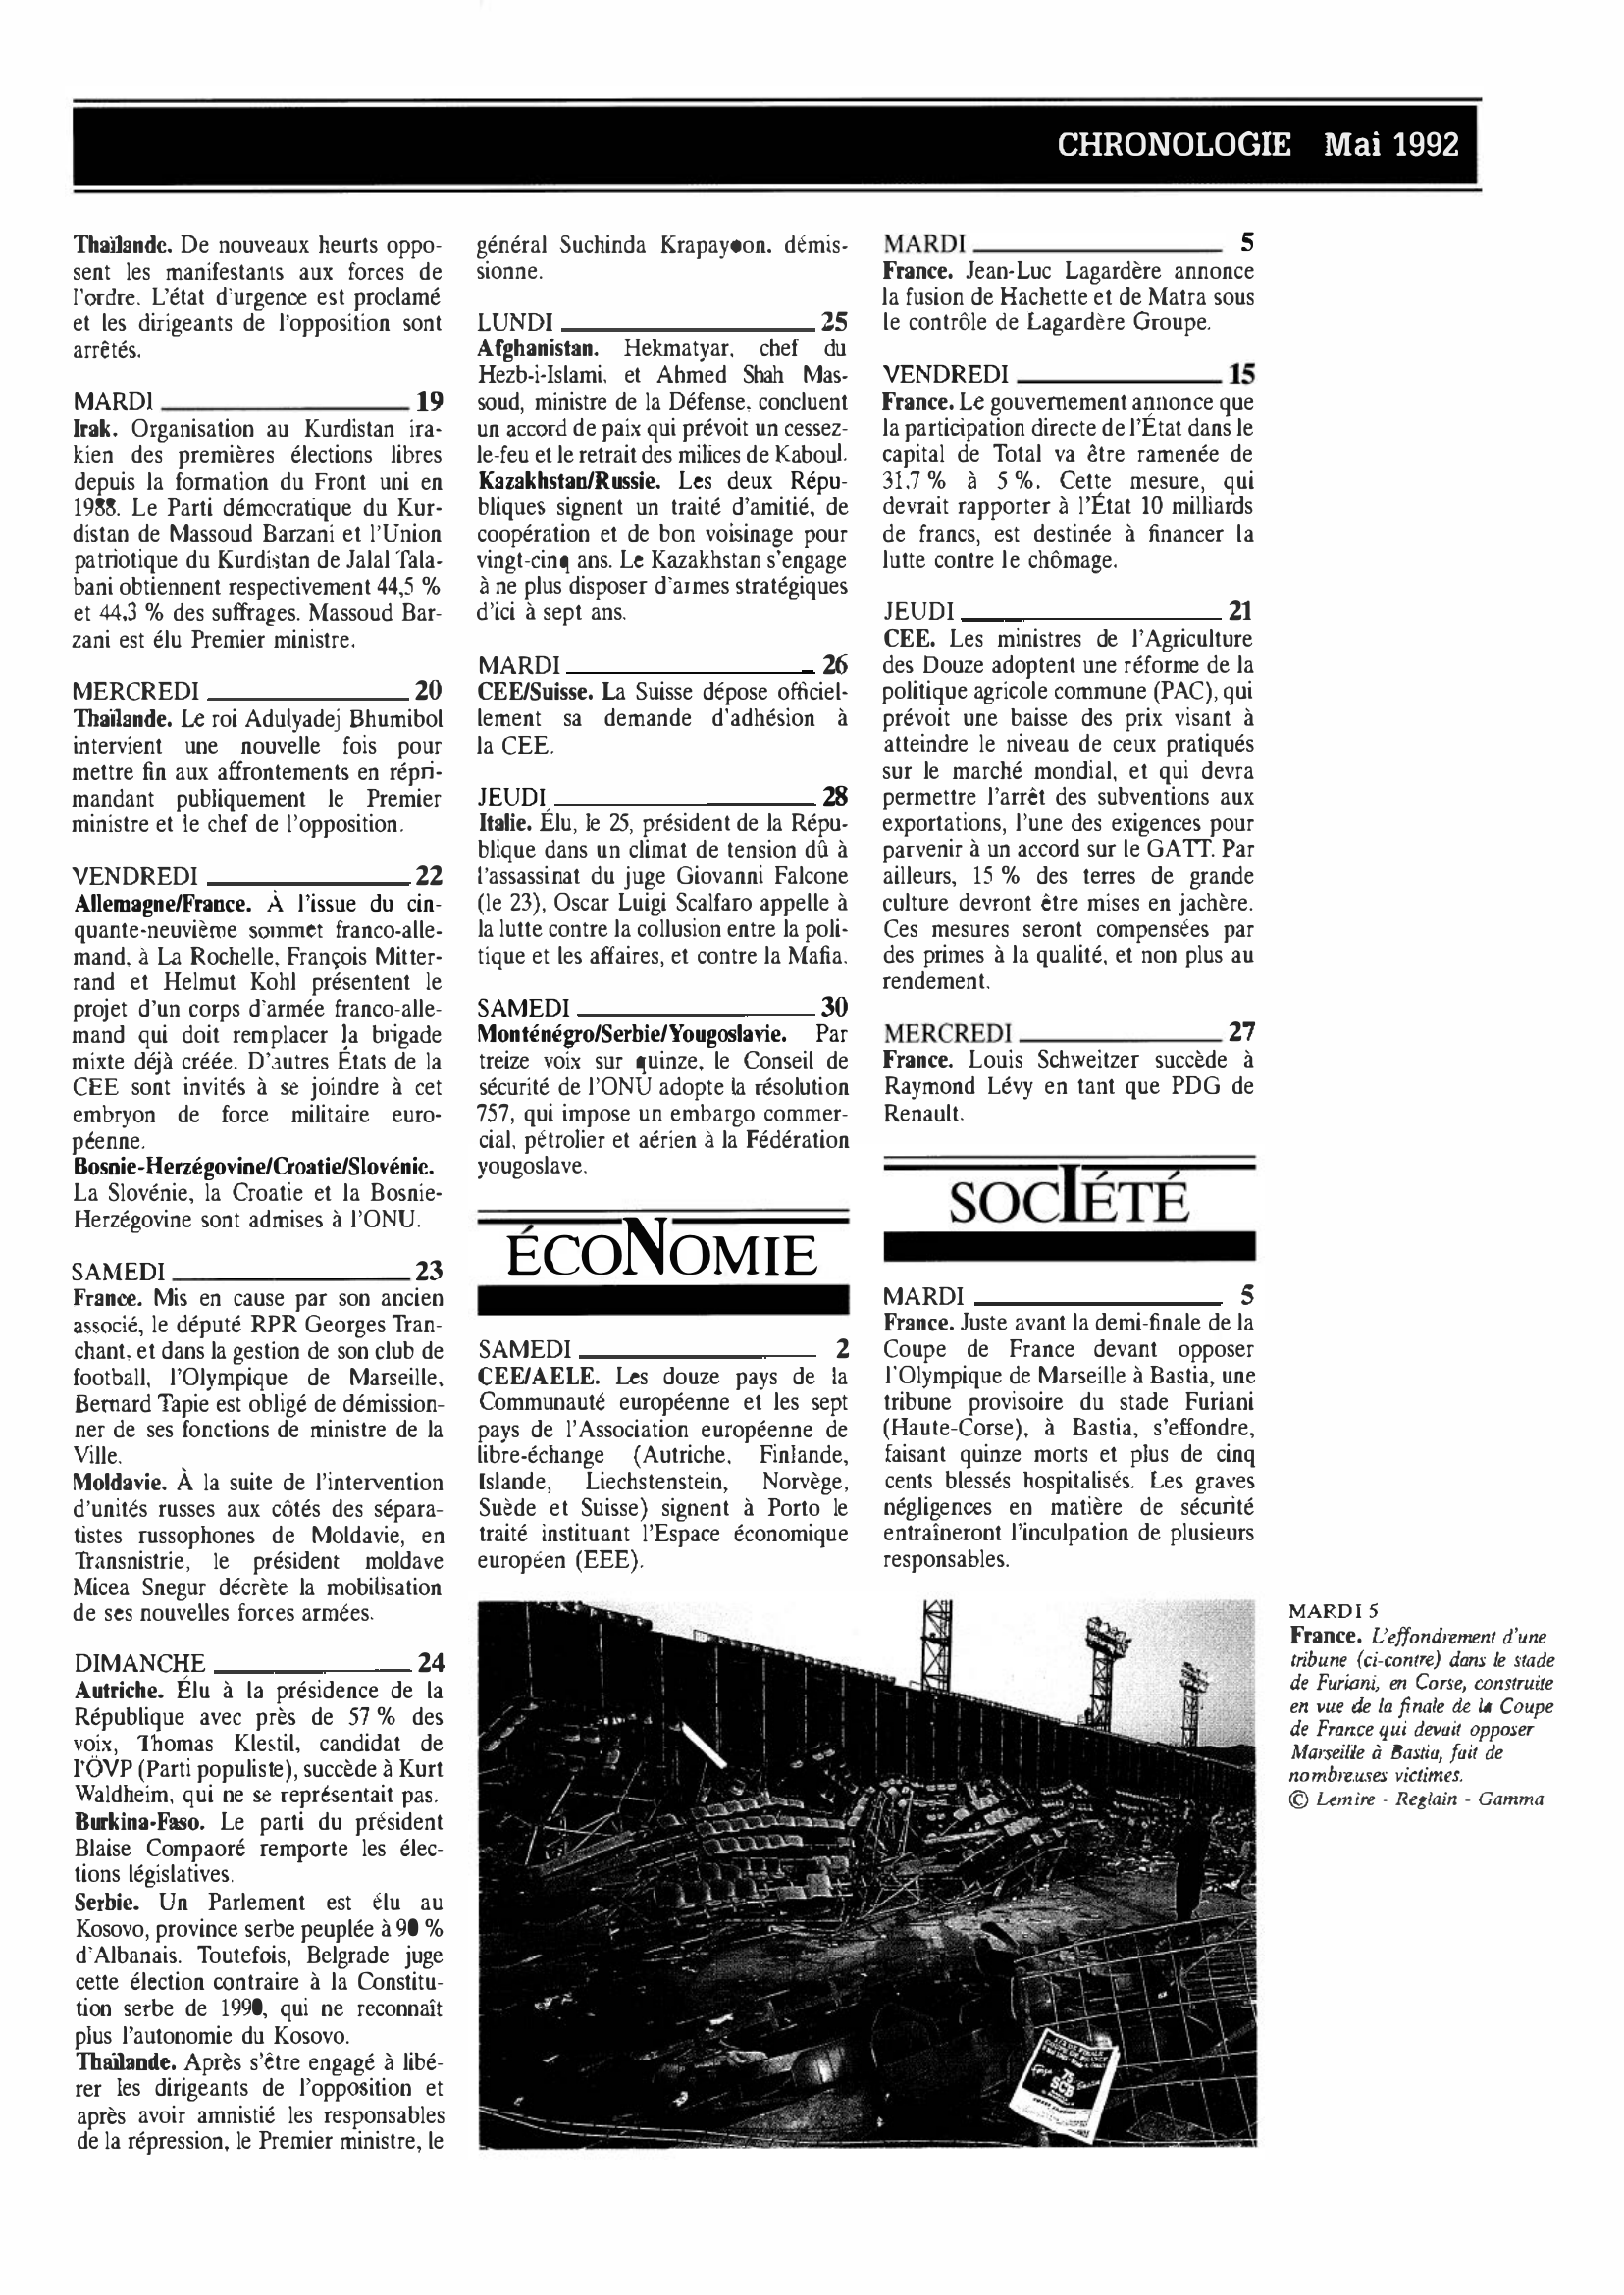 Prévisualisation du document CHRONOLOGIE Mai 1992 dans le monde (histoire chronologique)